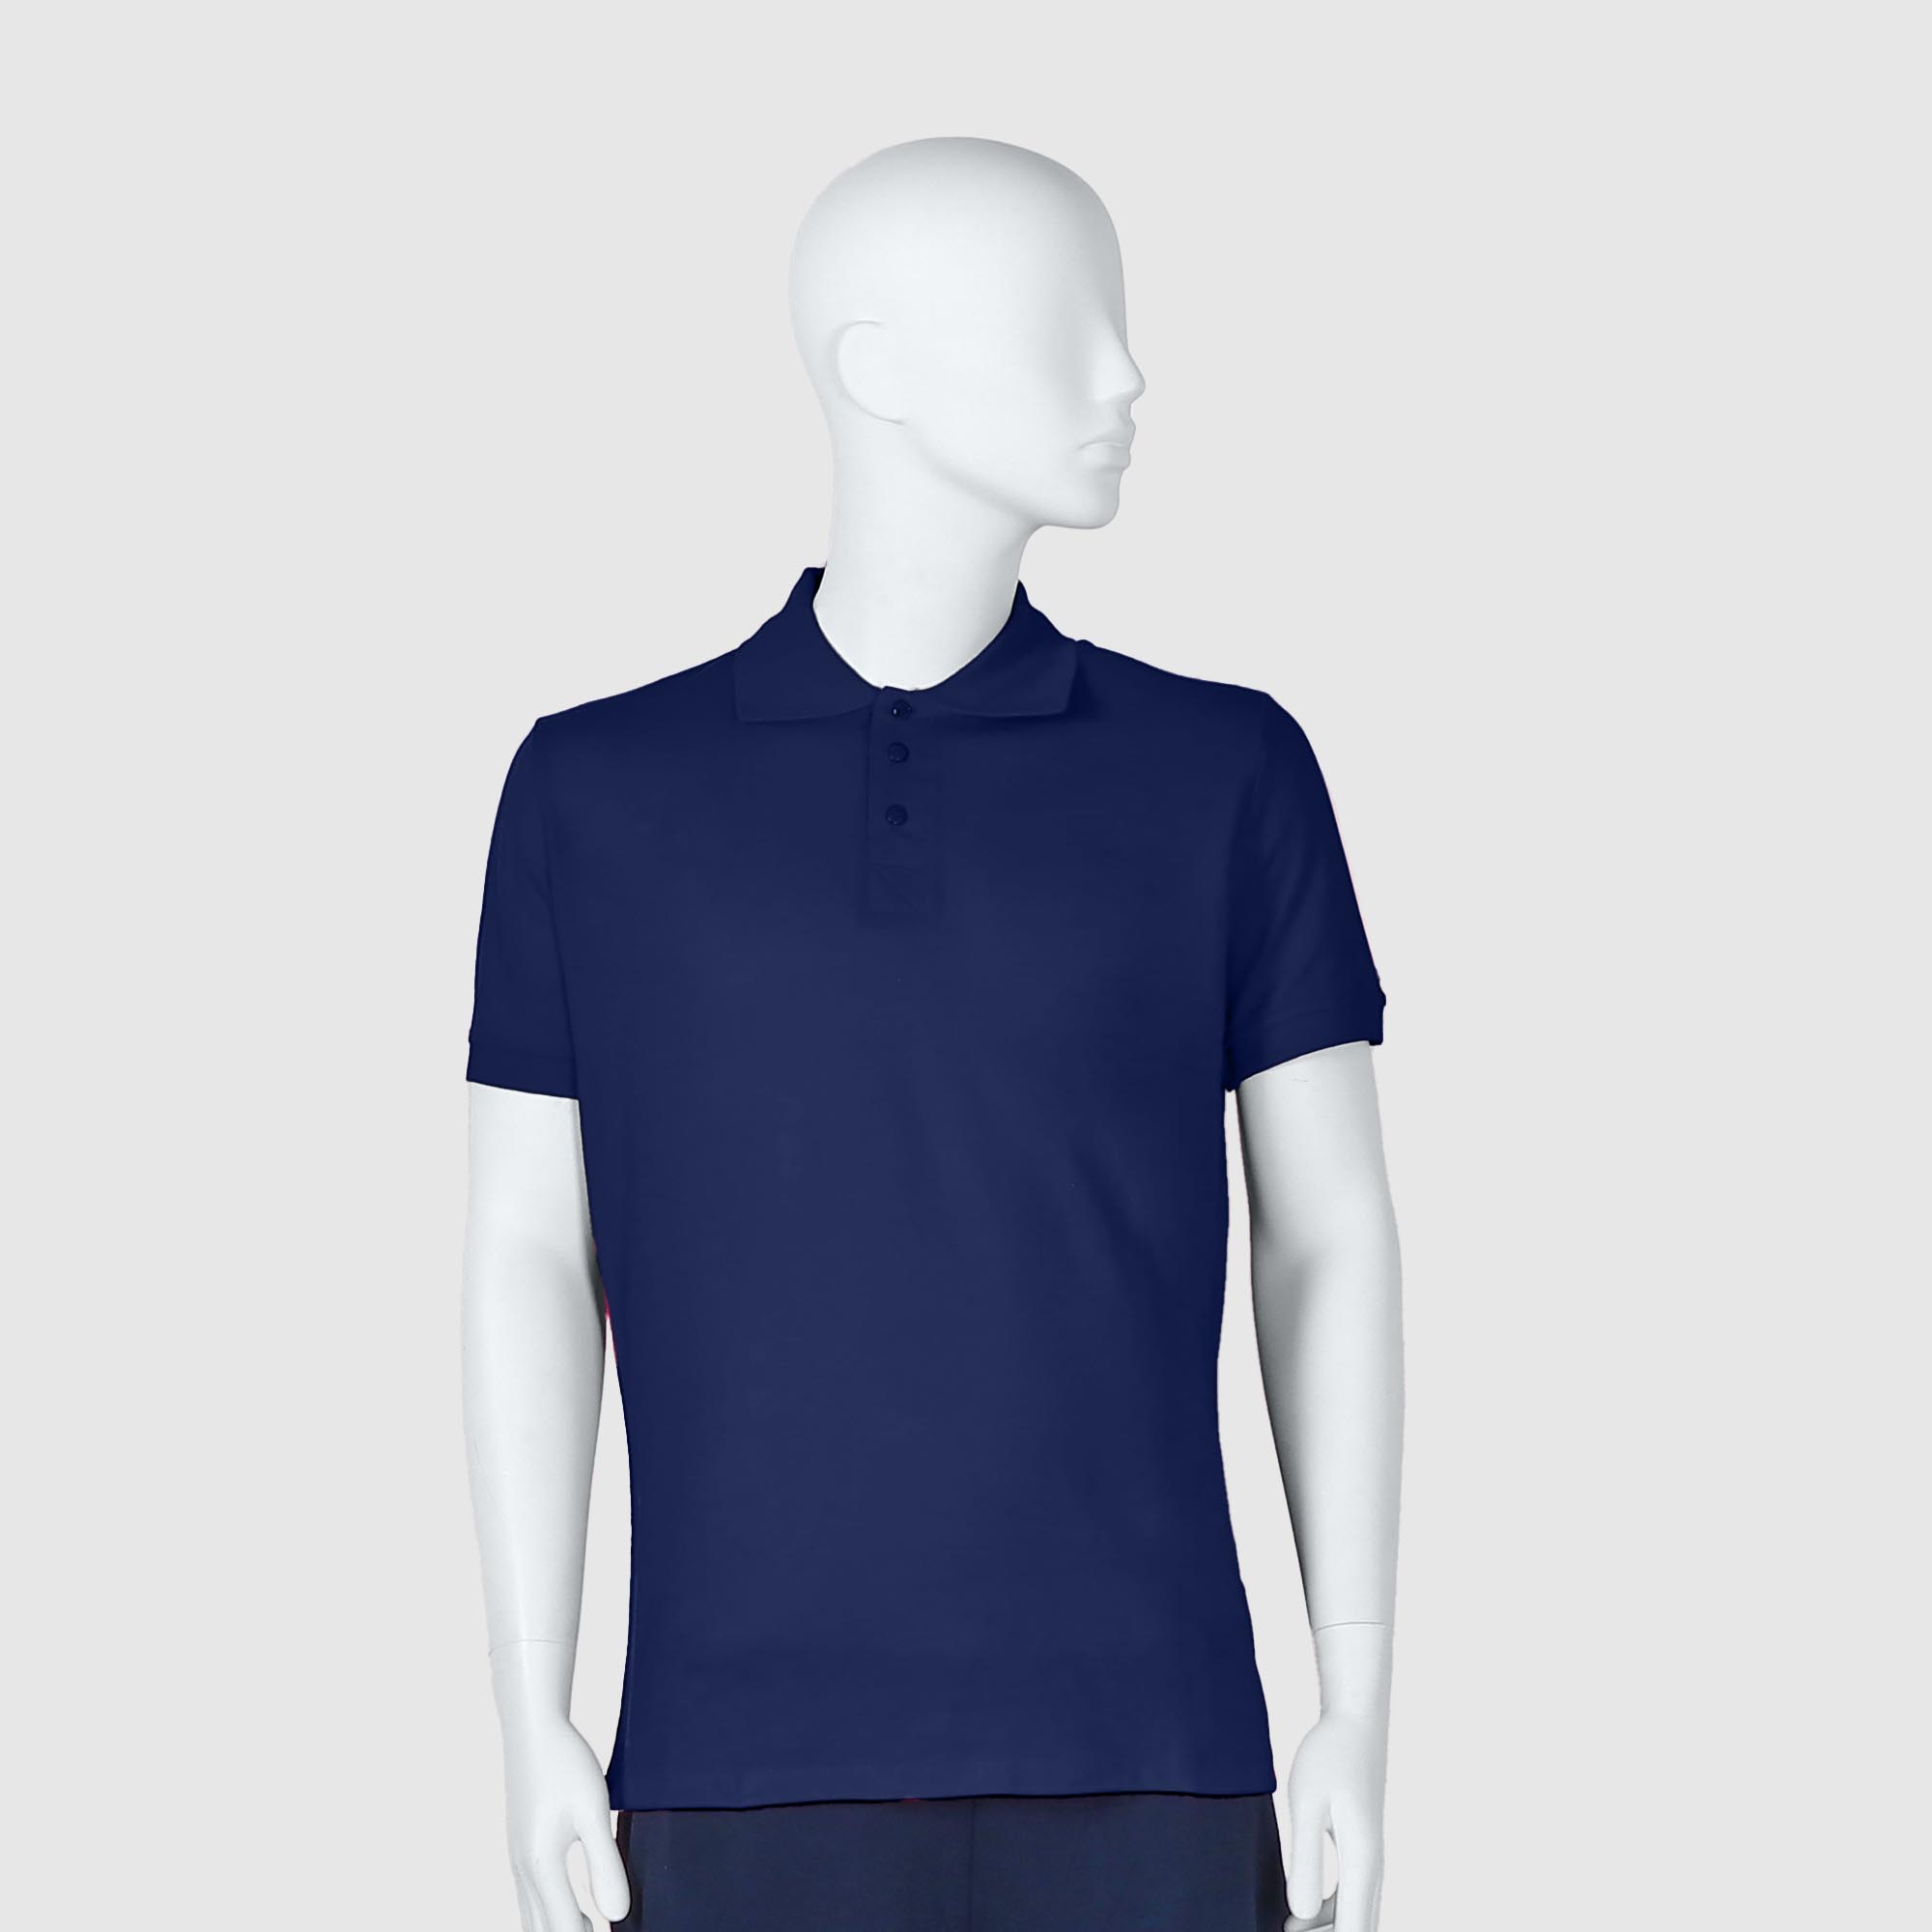 Мужская футболка-поло Diva Teks синяя (DTD-10), цвет синий, размер 46-48